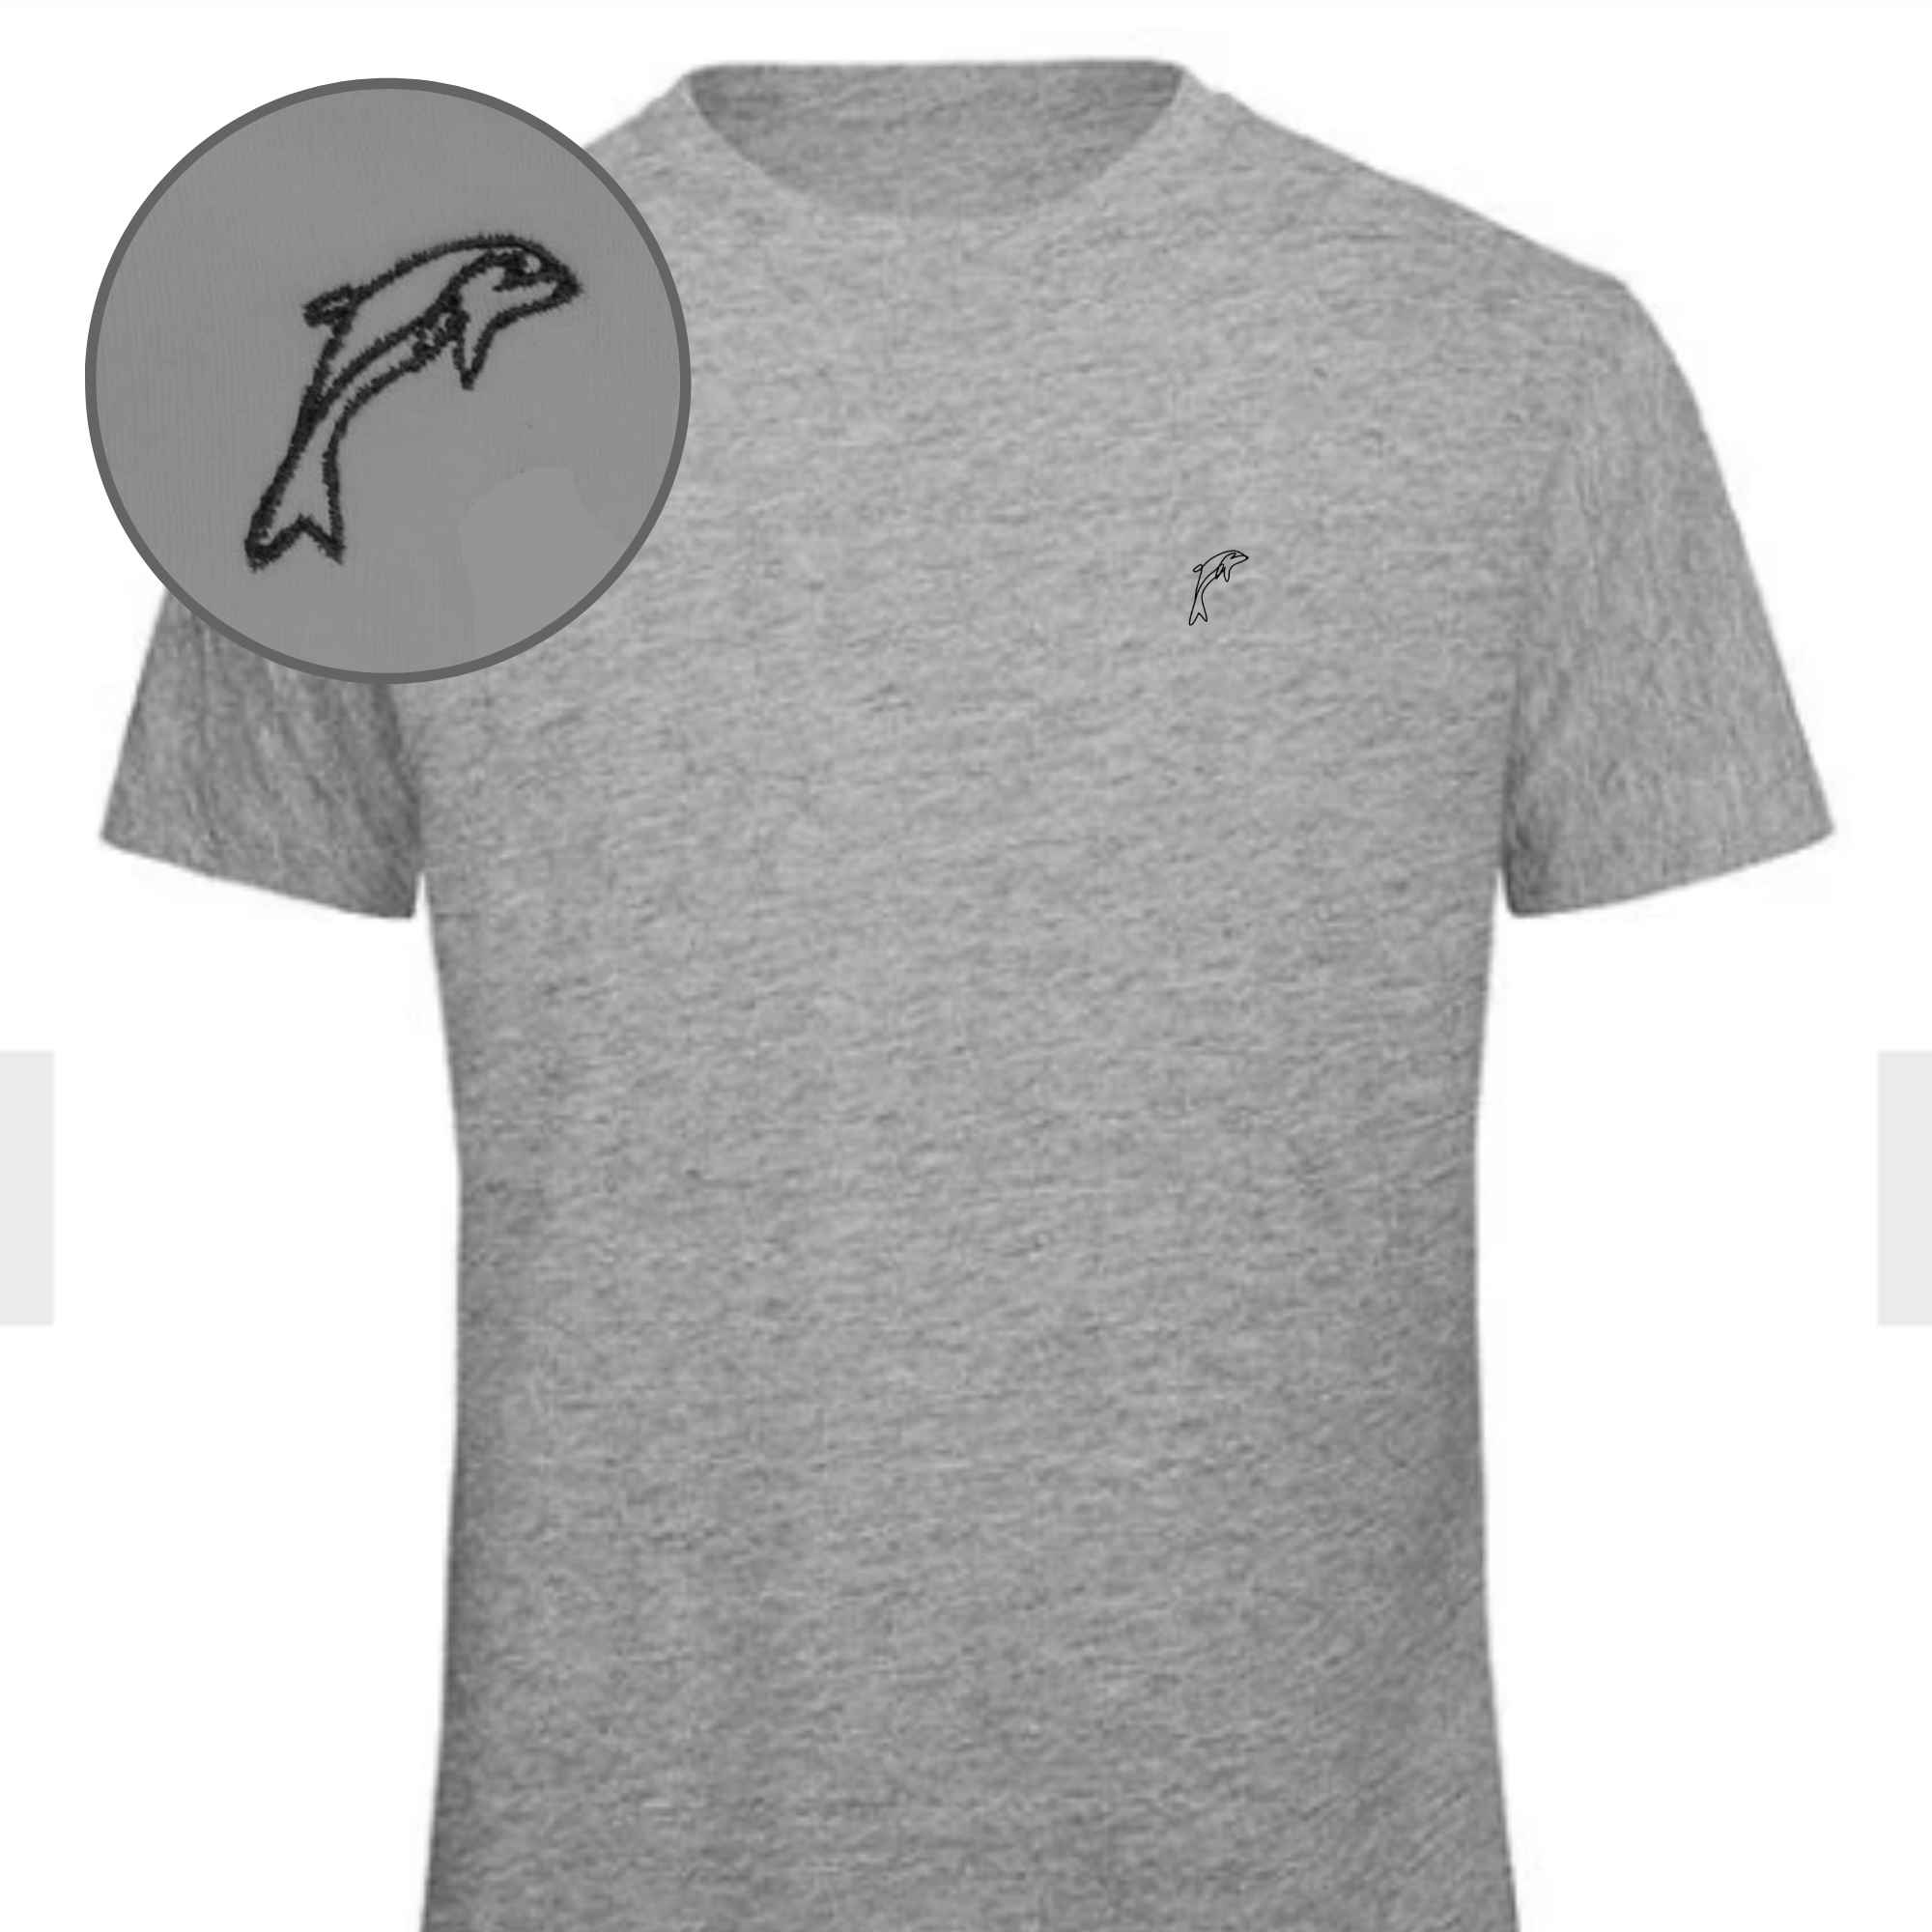 Besticktes T-Shirt mit Delphinmotiv auf der Brust in Grau meliert